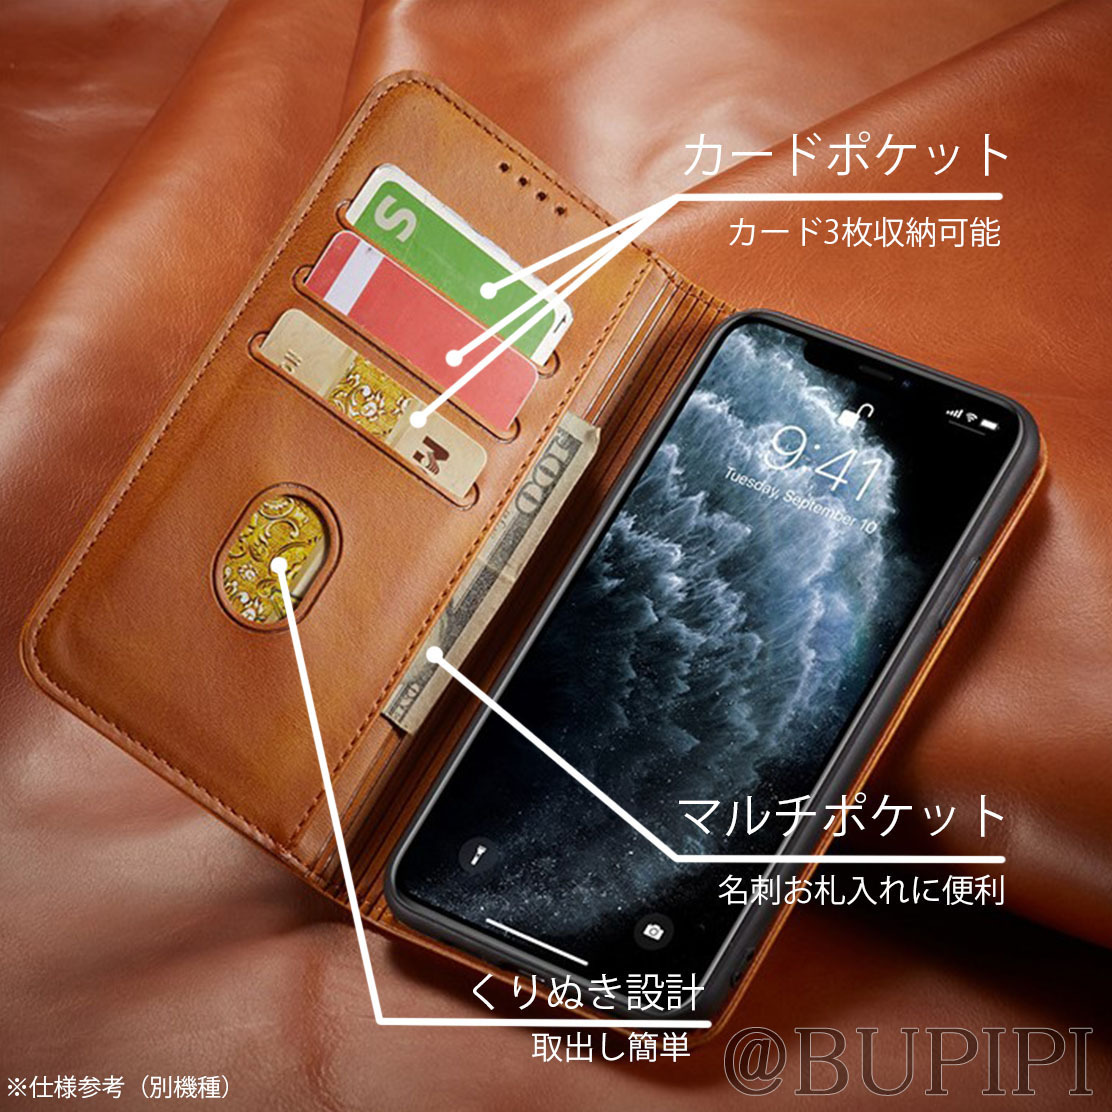 手帳型 スマホケース 高品質 レザー iphone 13pro 対応 本革調 キャメル カバー おすすめ